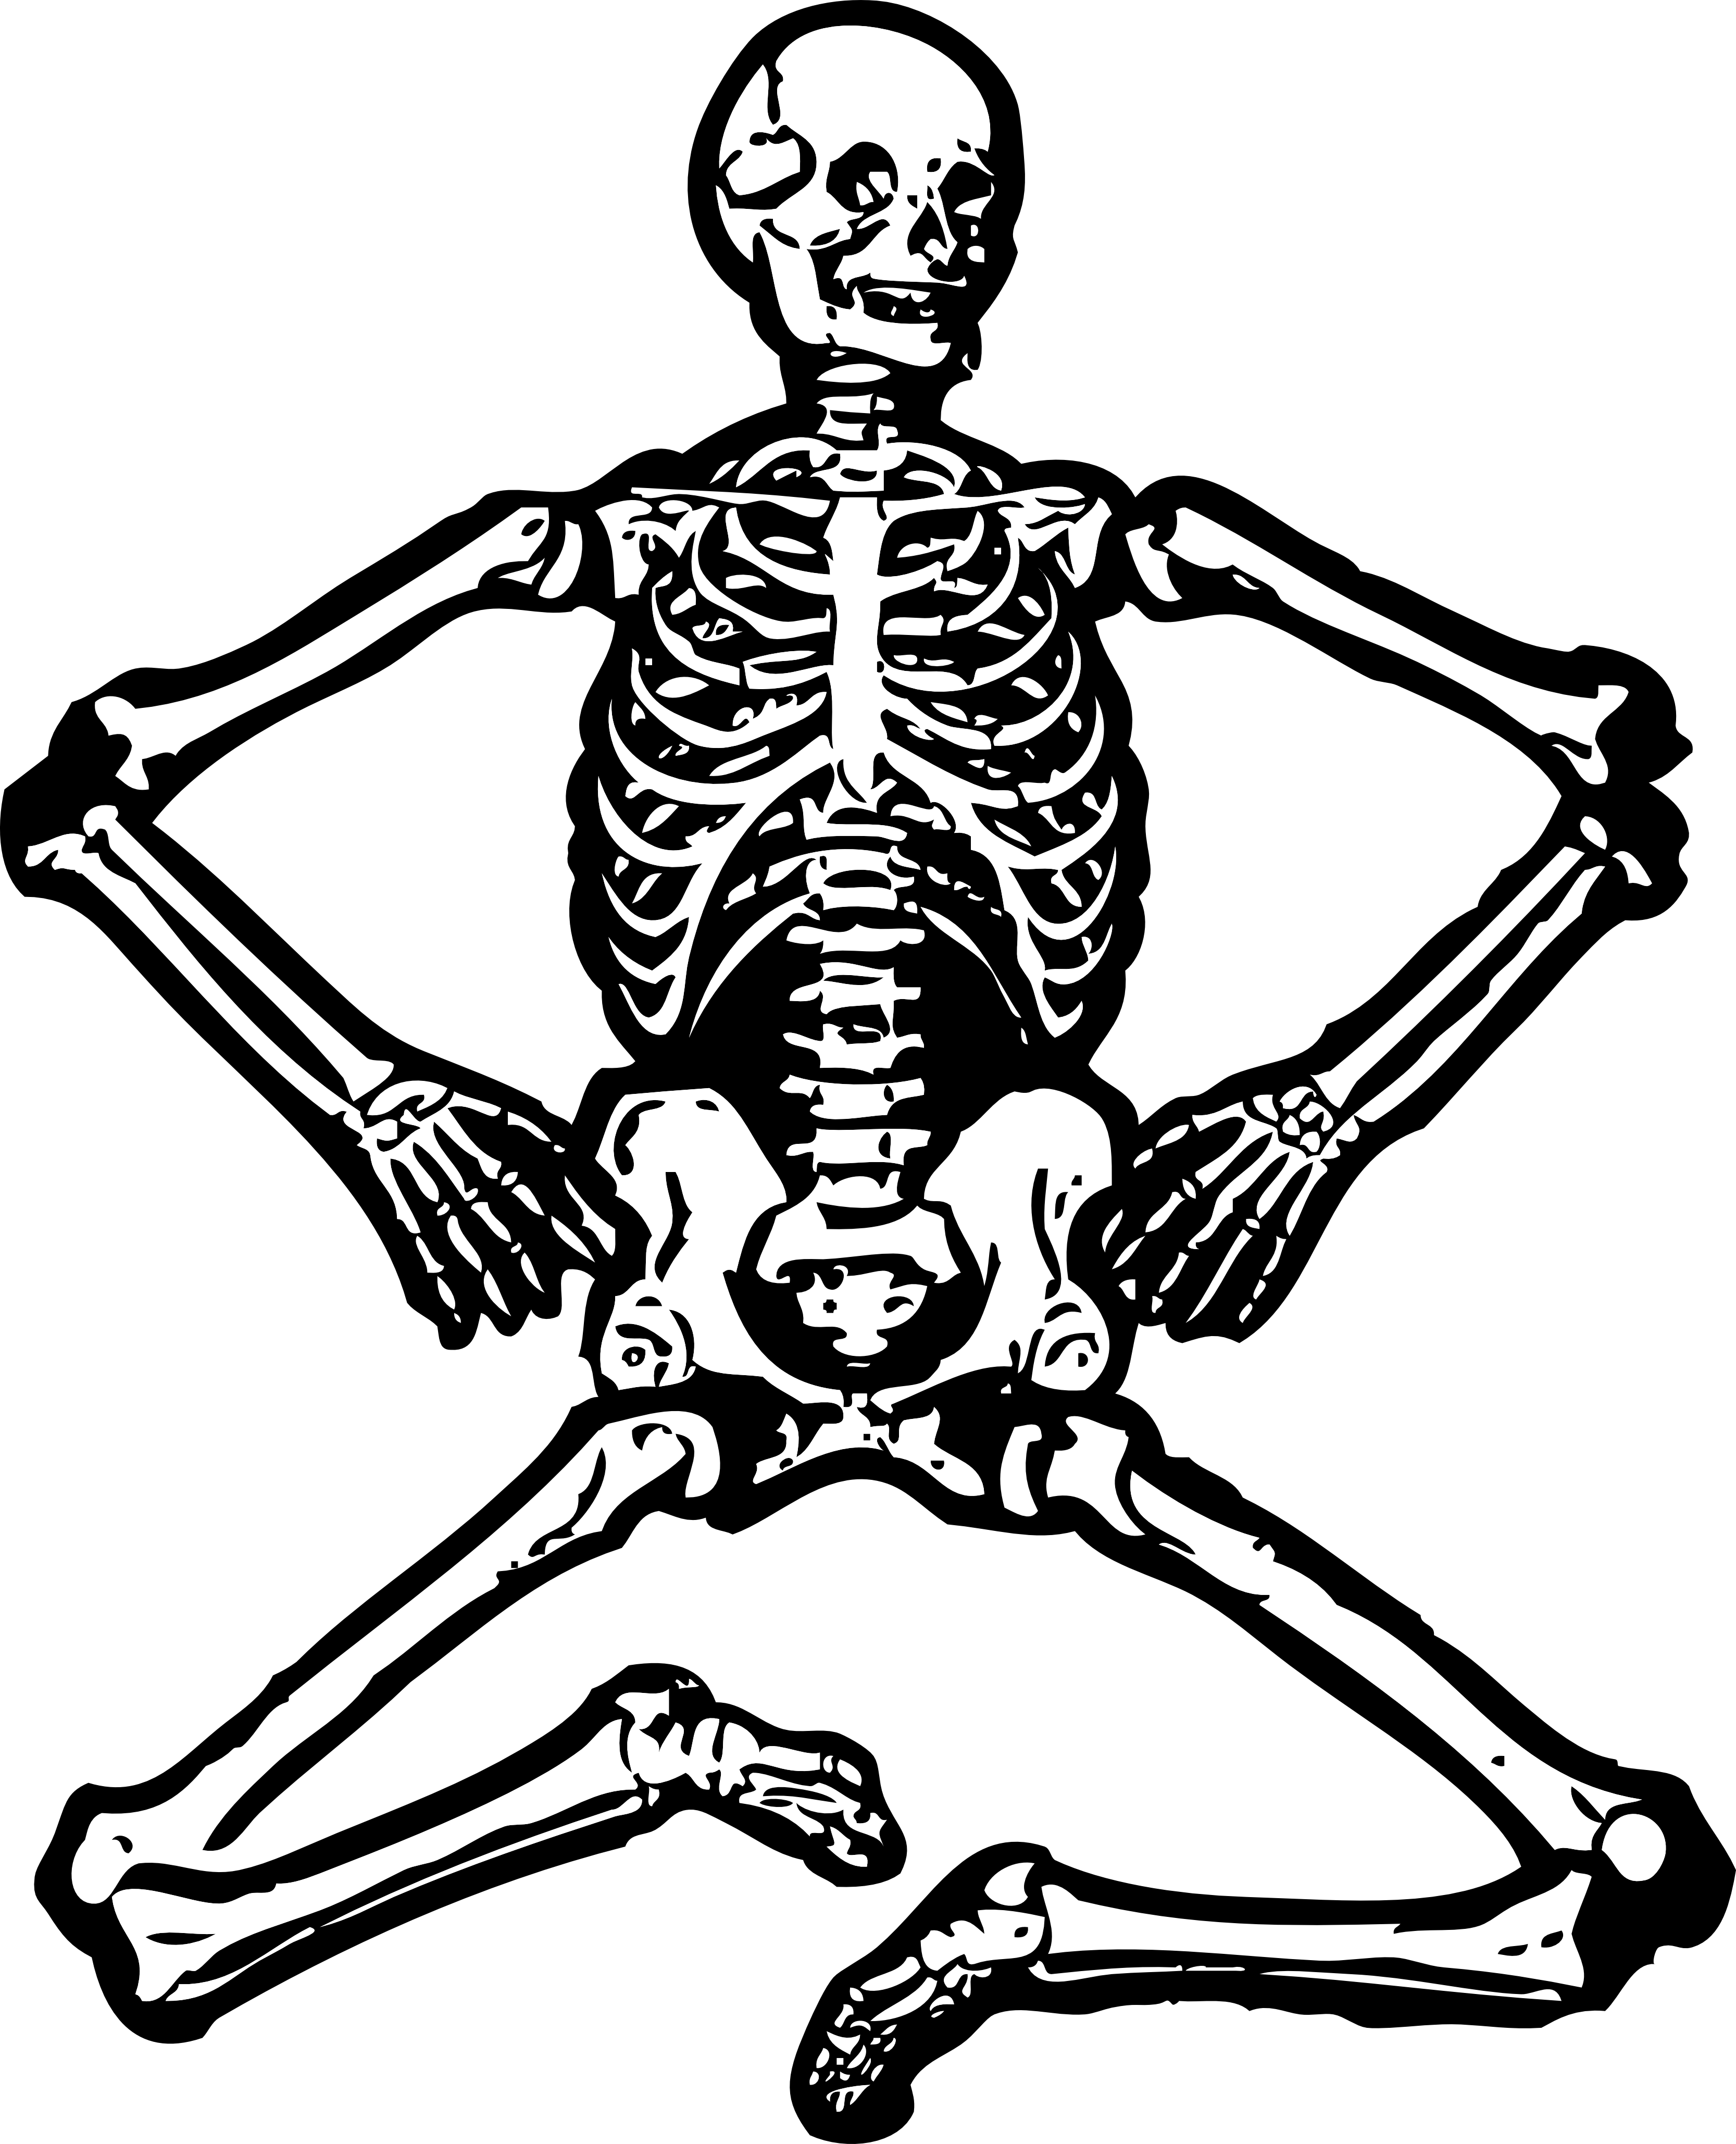 Skelett